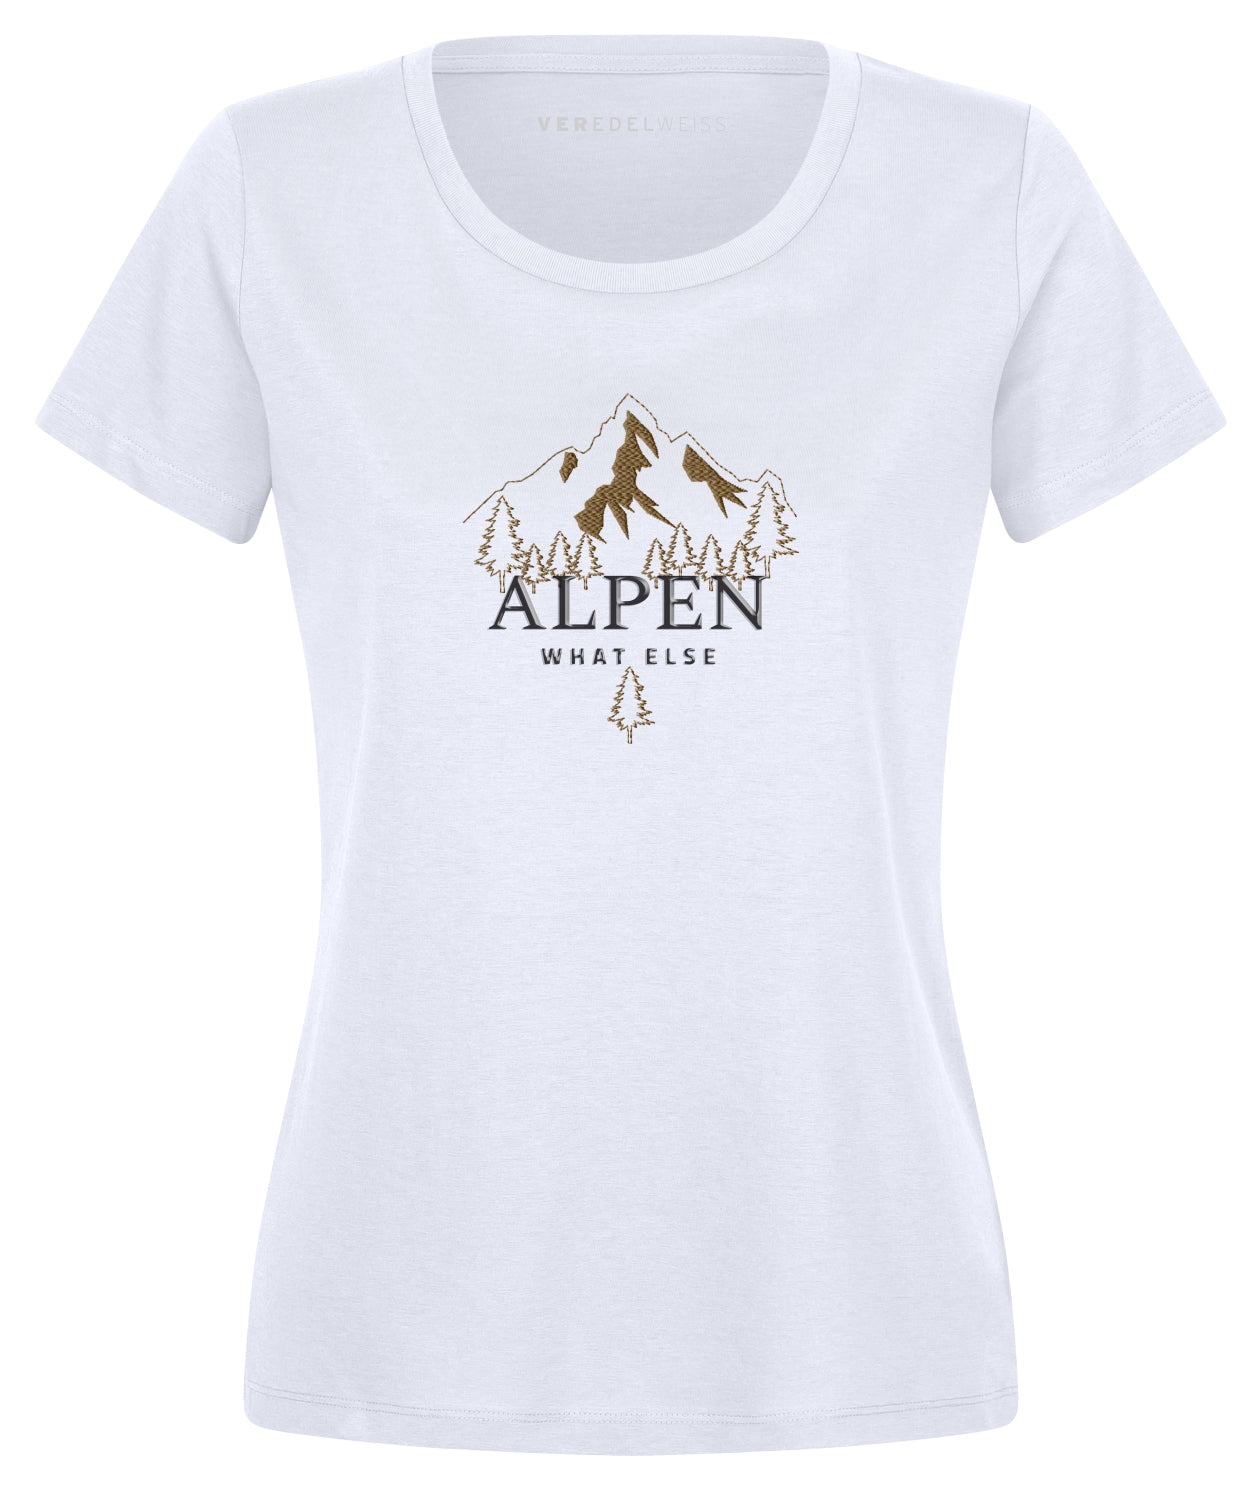 Alpen - What Else (Damen) Alpen - What Else (Damen)